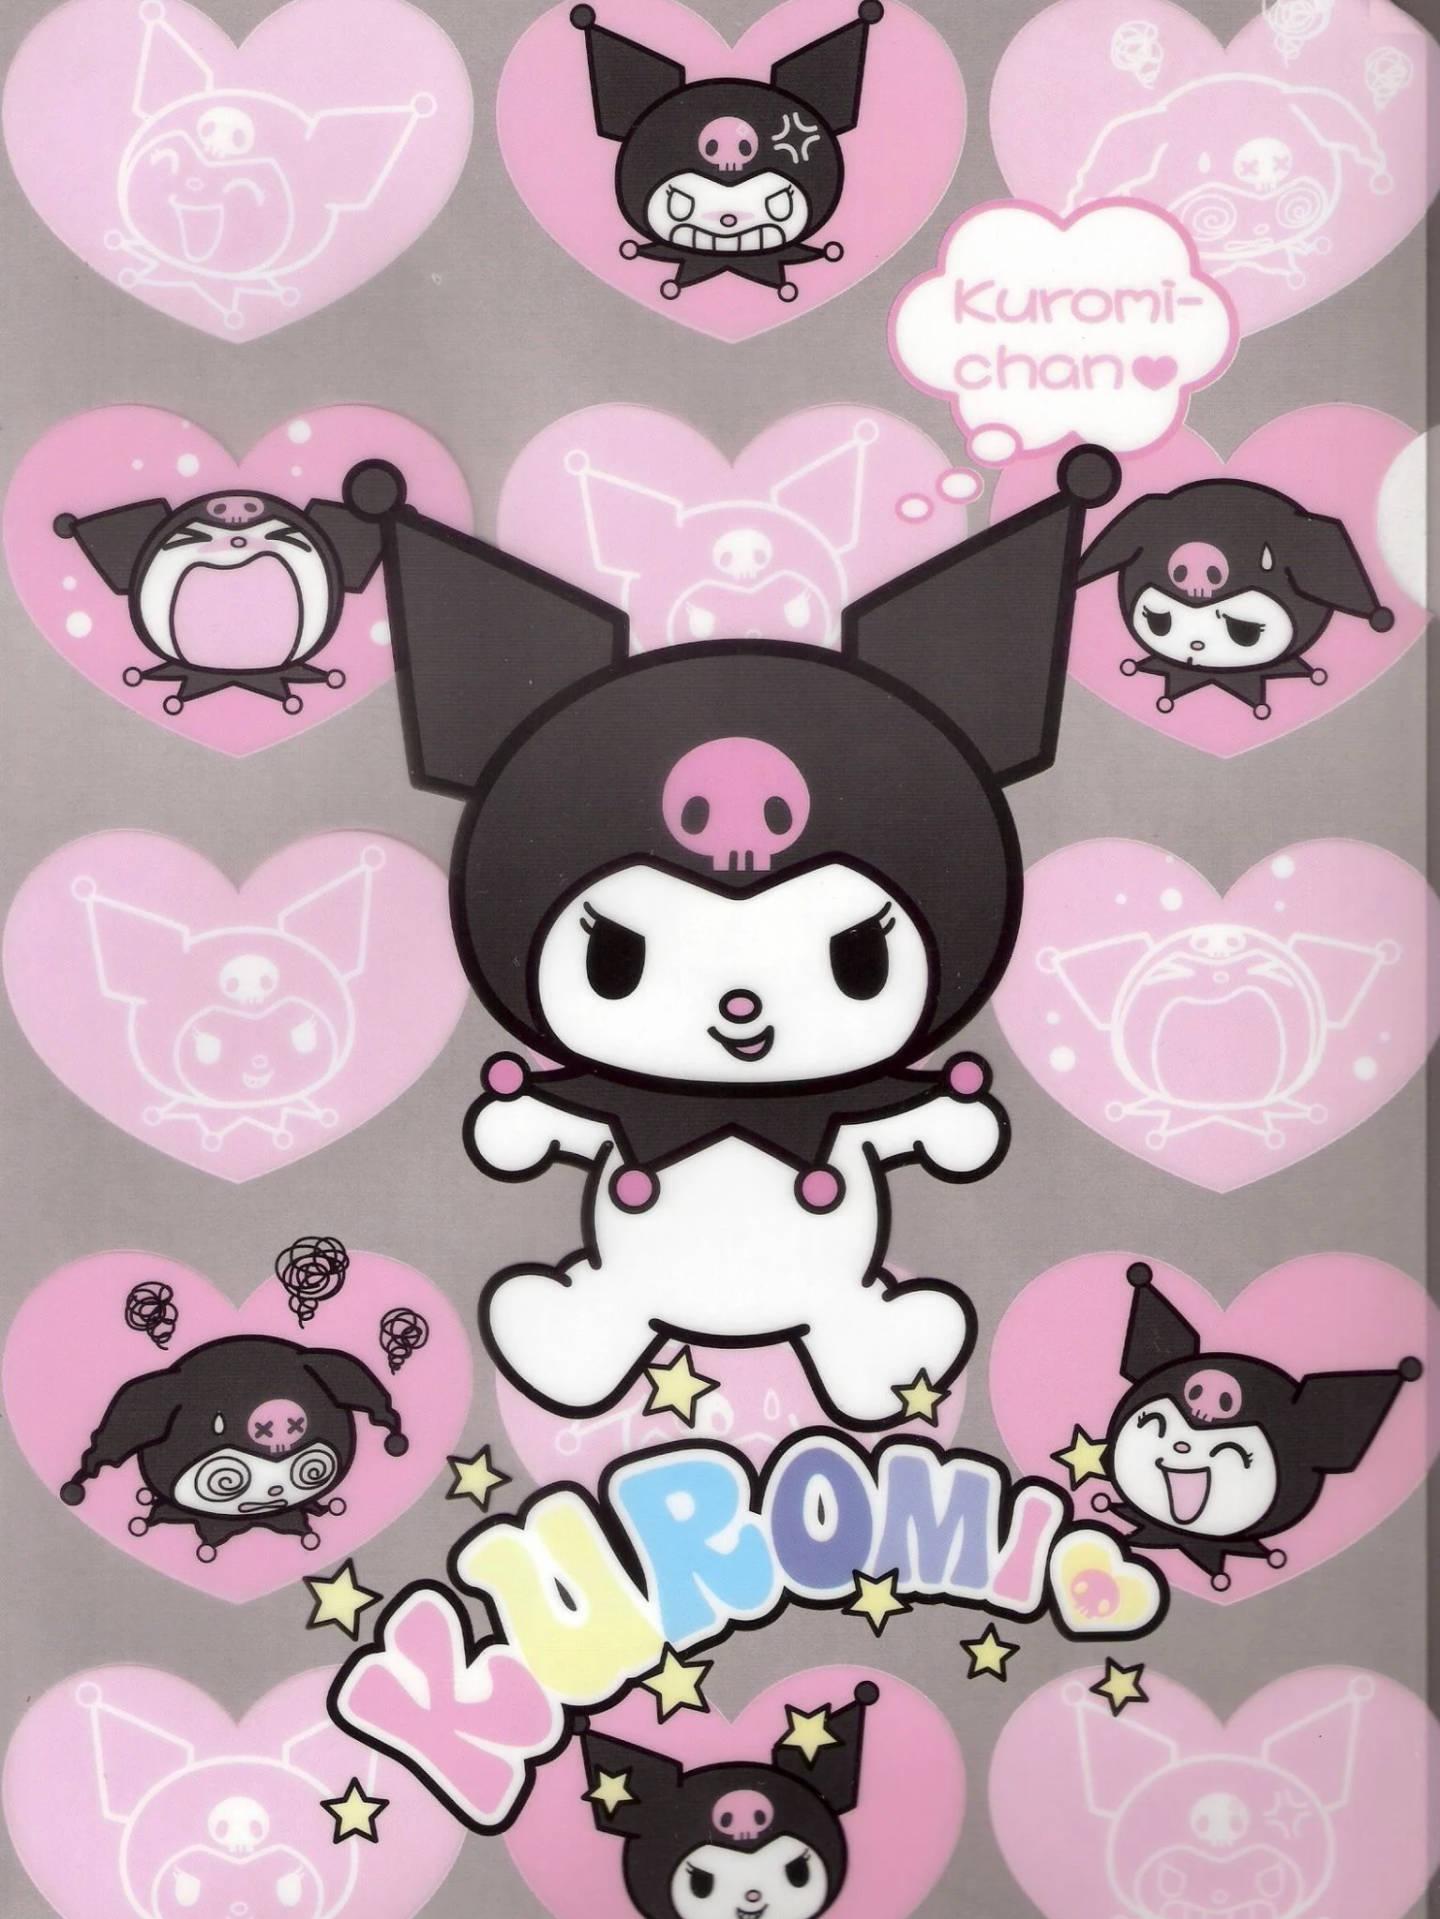 Download Kuromi The Rabbit Wallpaper